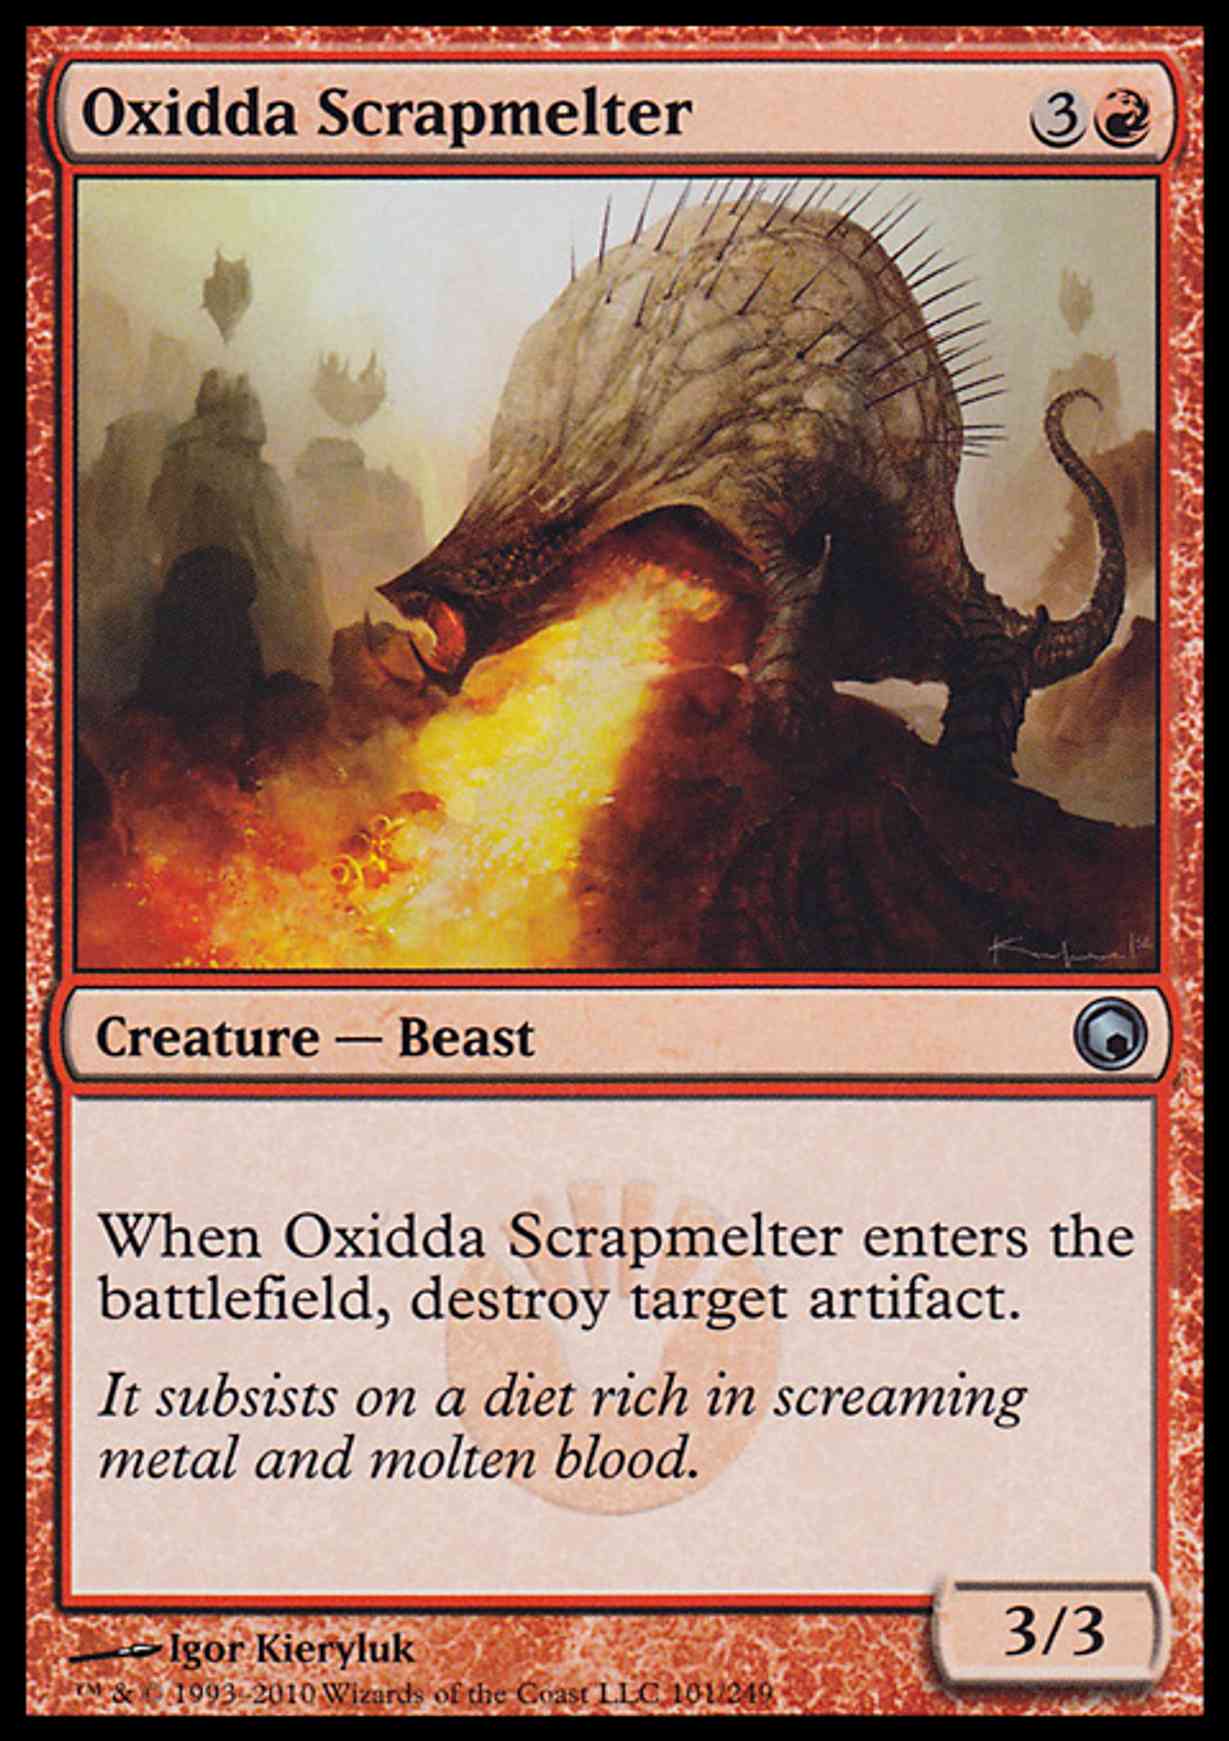 Oxidda Scrapmelter magic card front